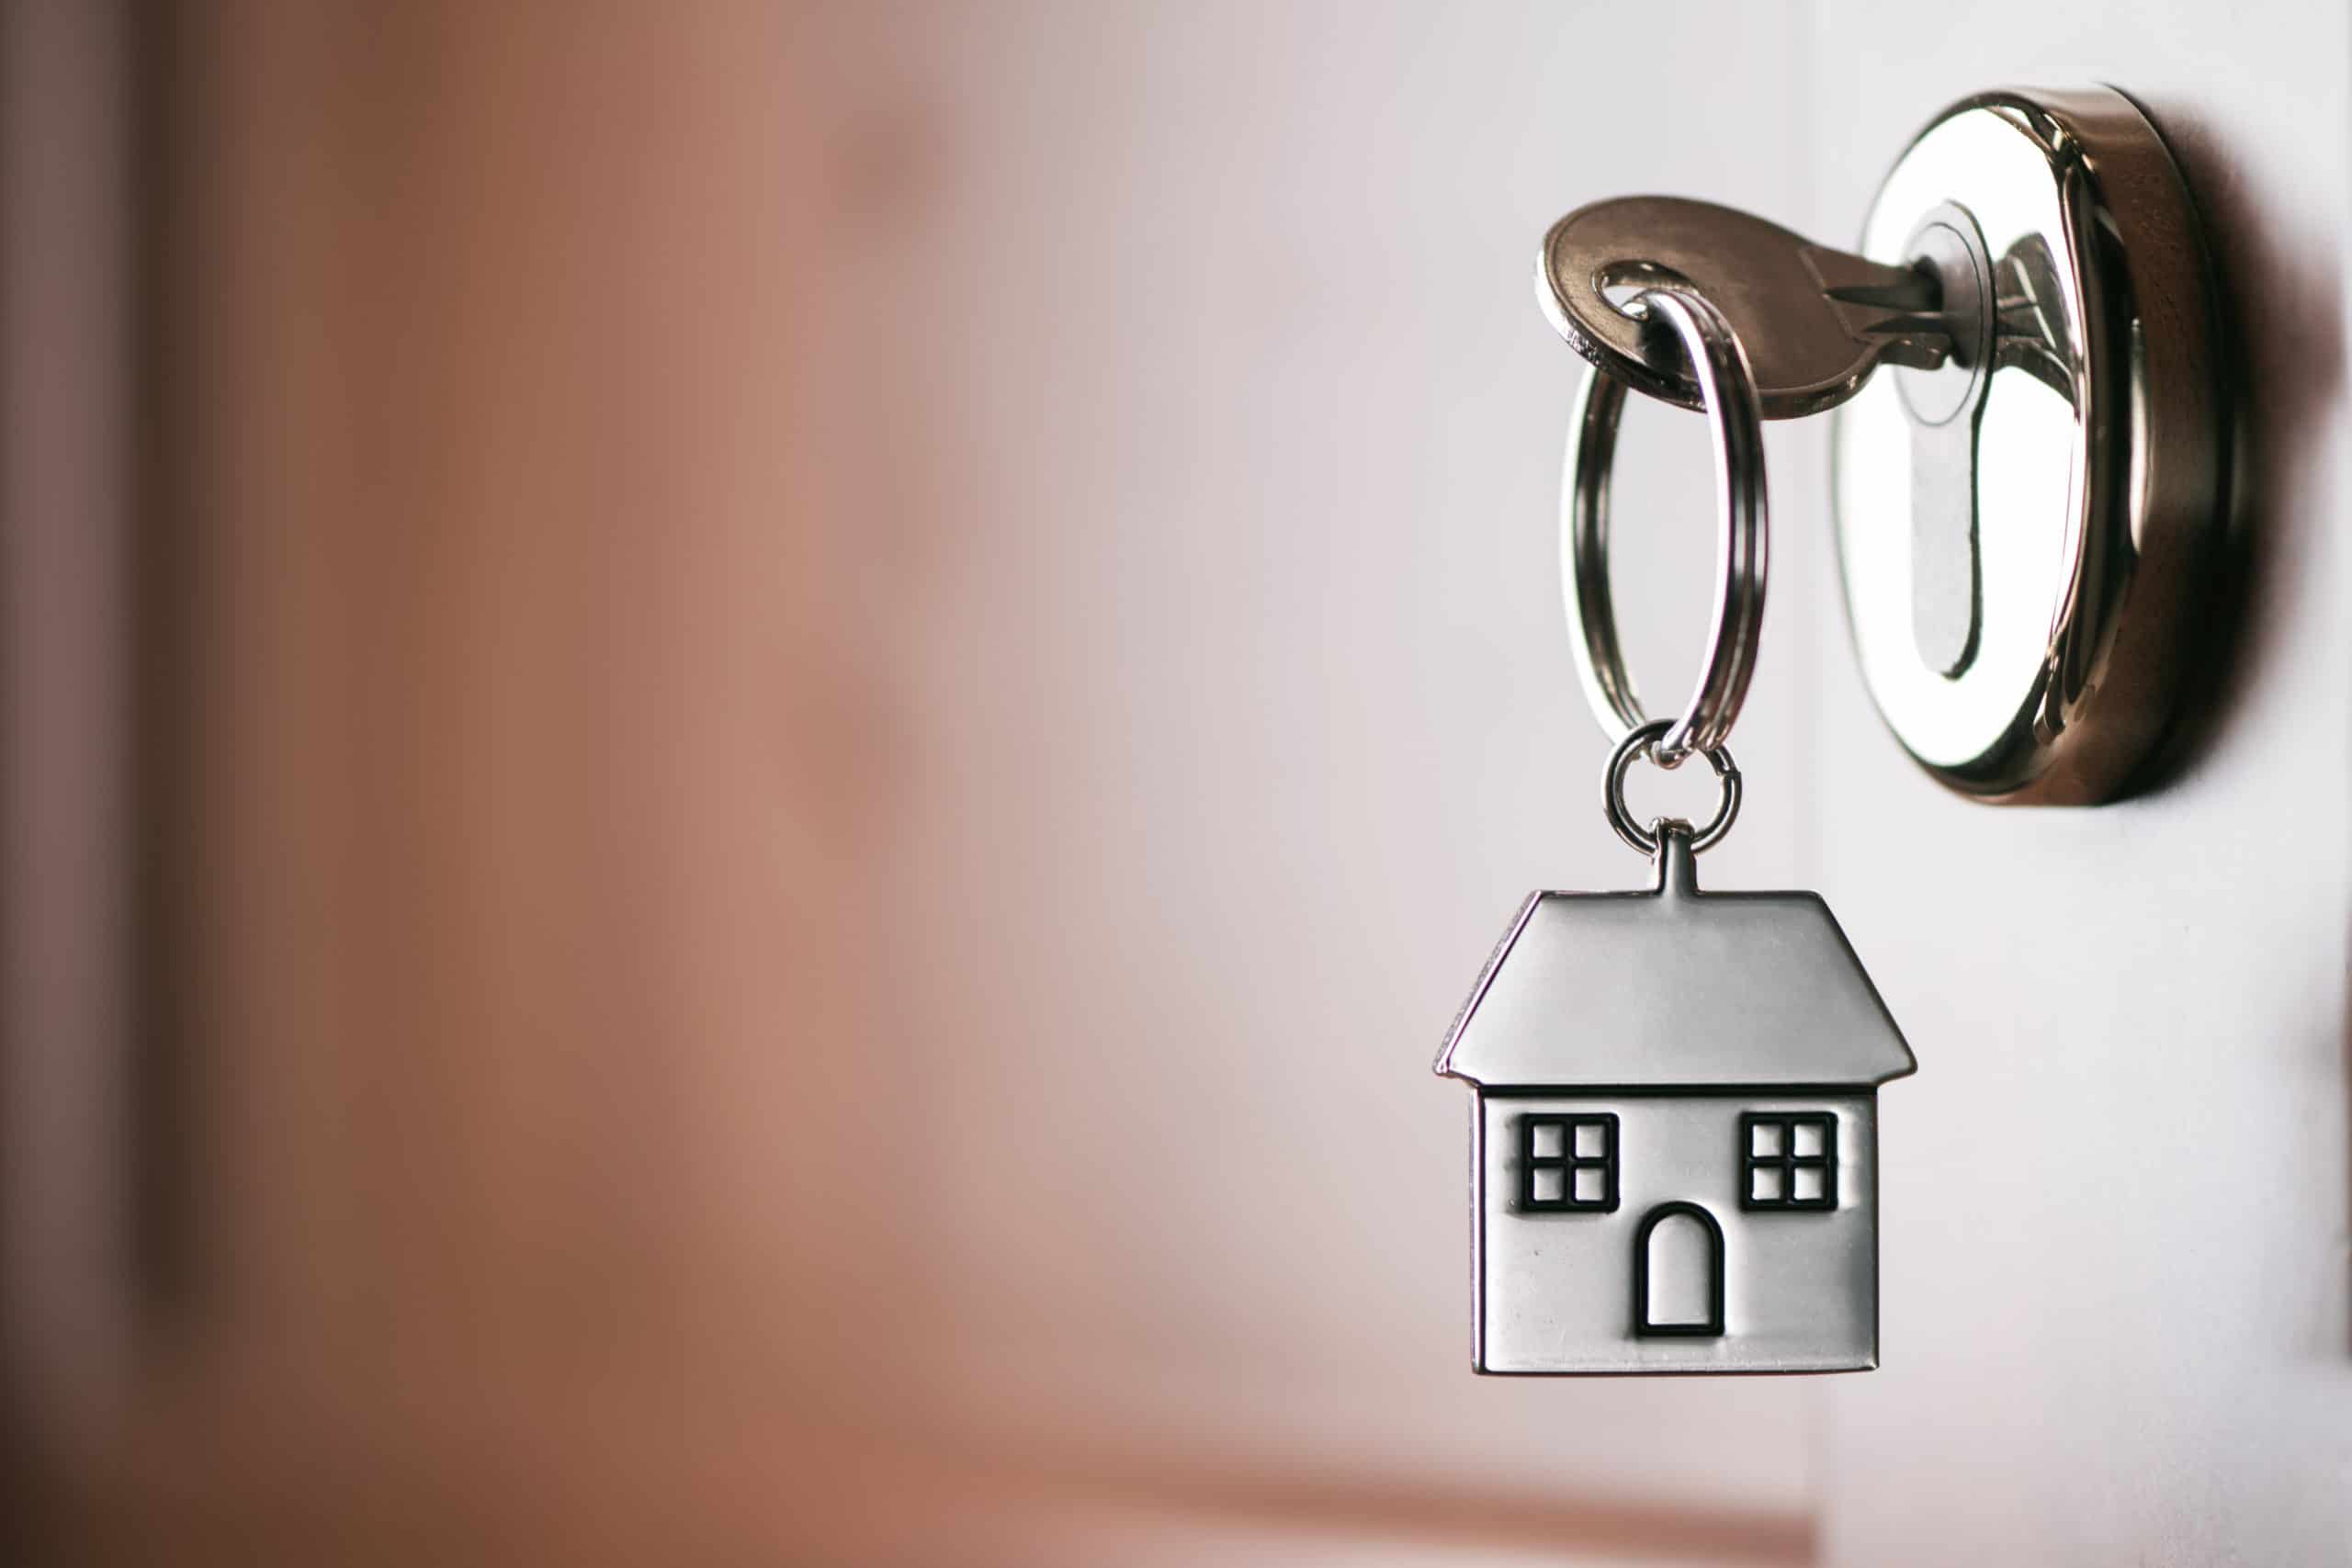 rent-to-own scheme house key